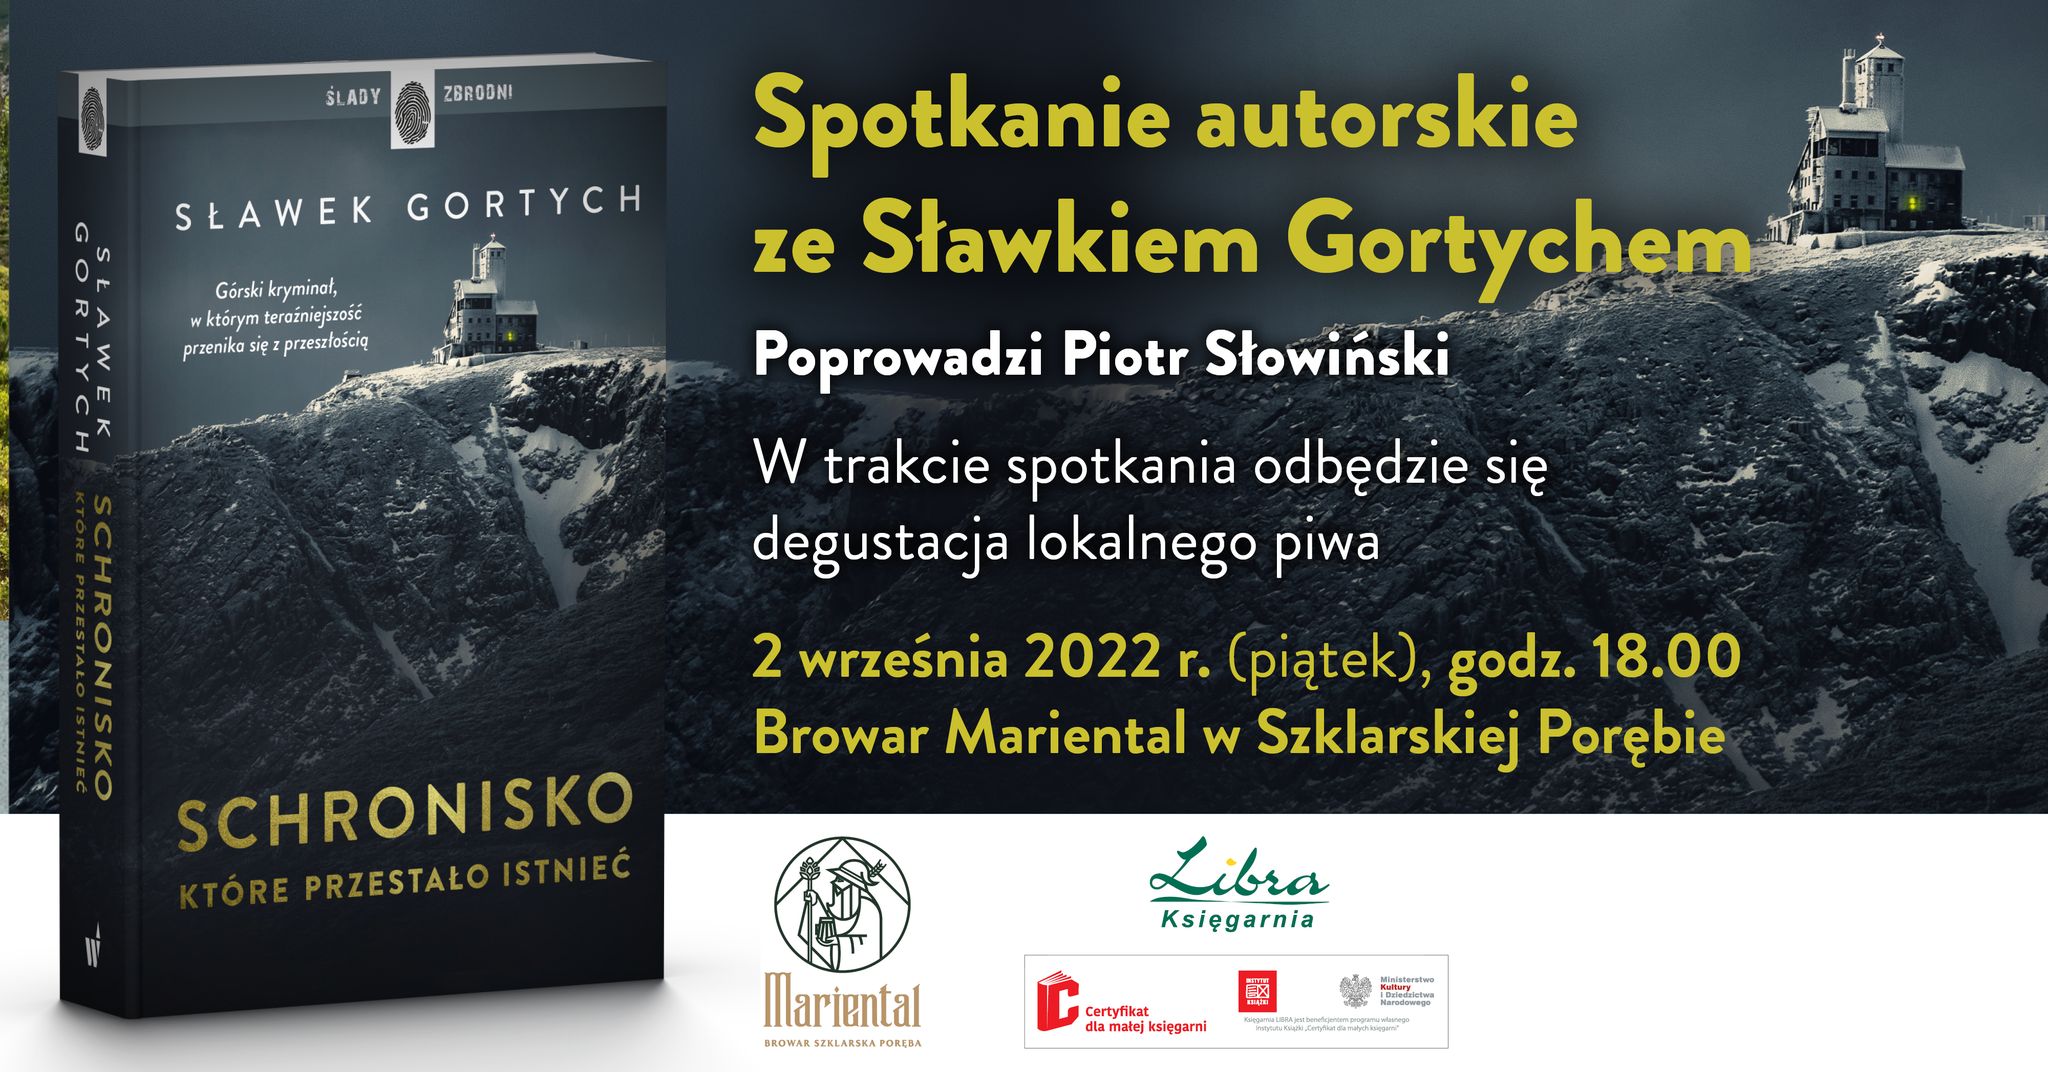 Sławomir Gortych - spotkanie autorskie 2 września 2022 roku